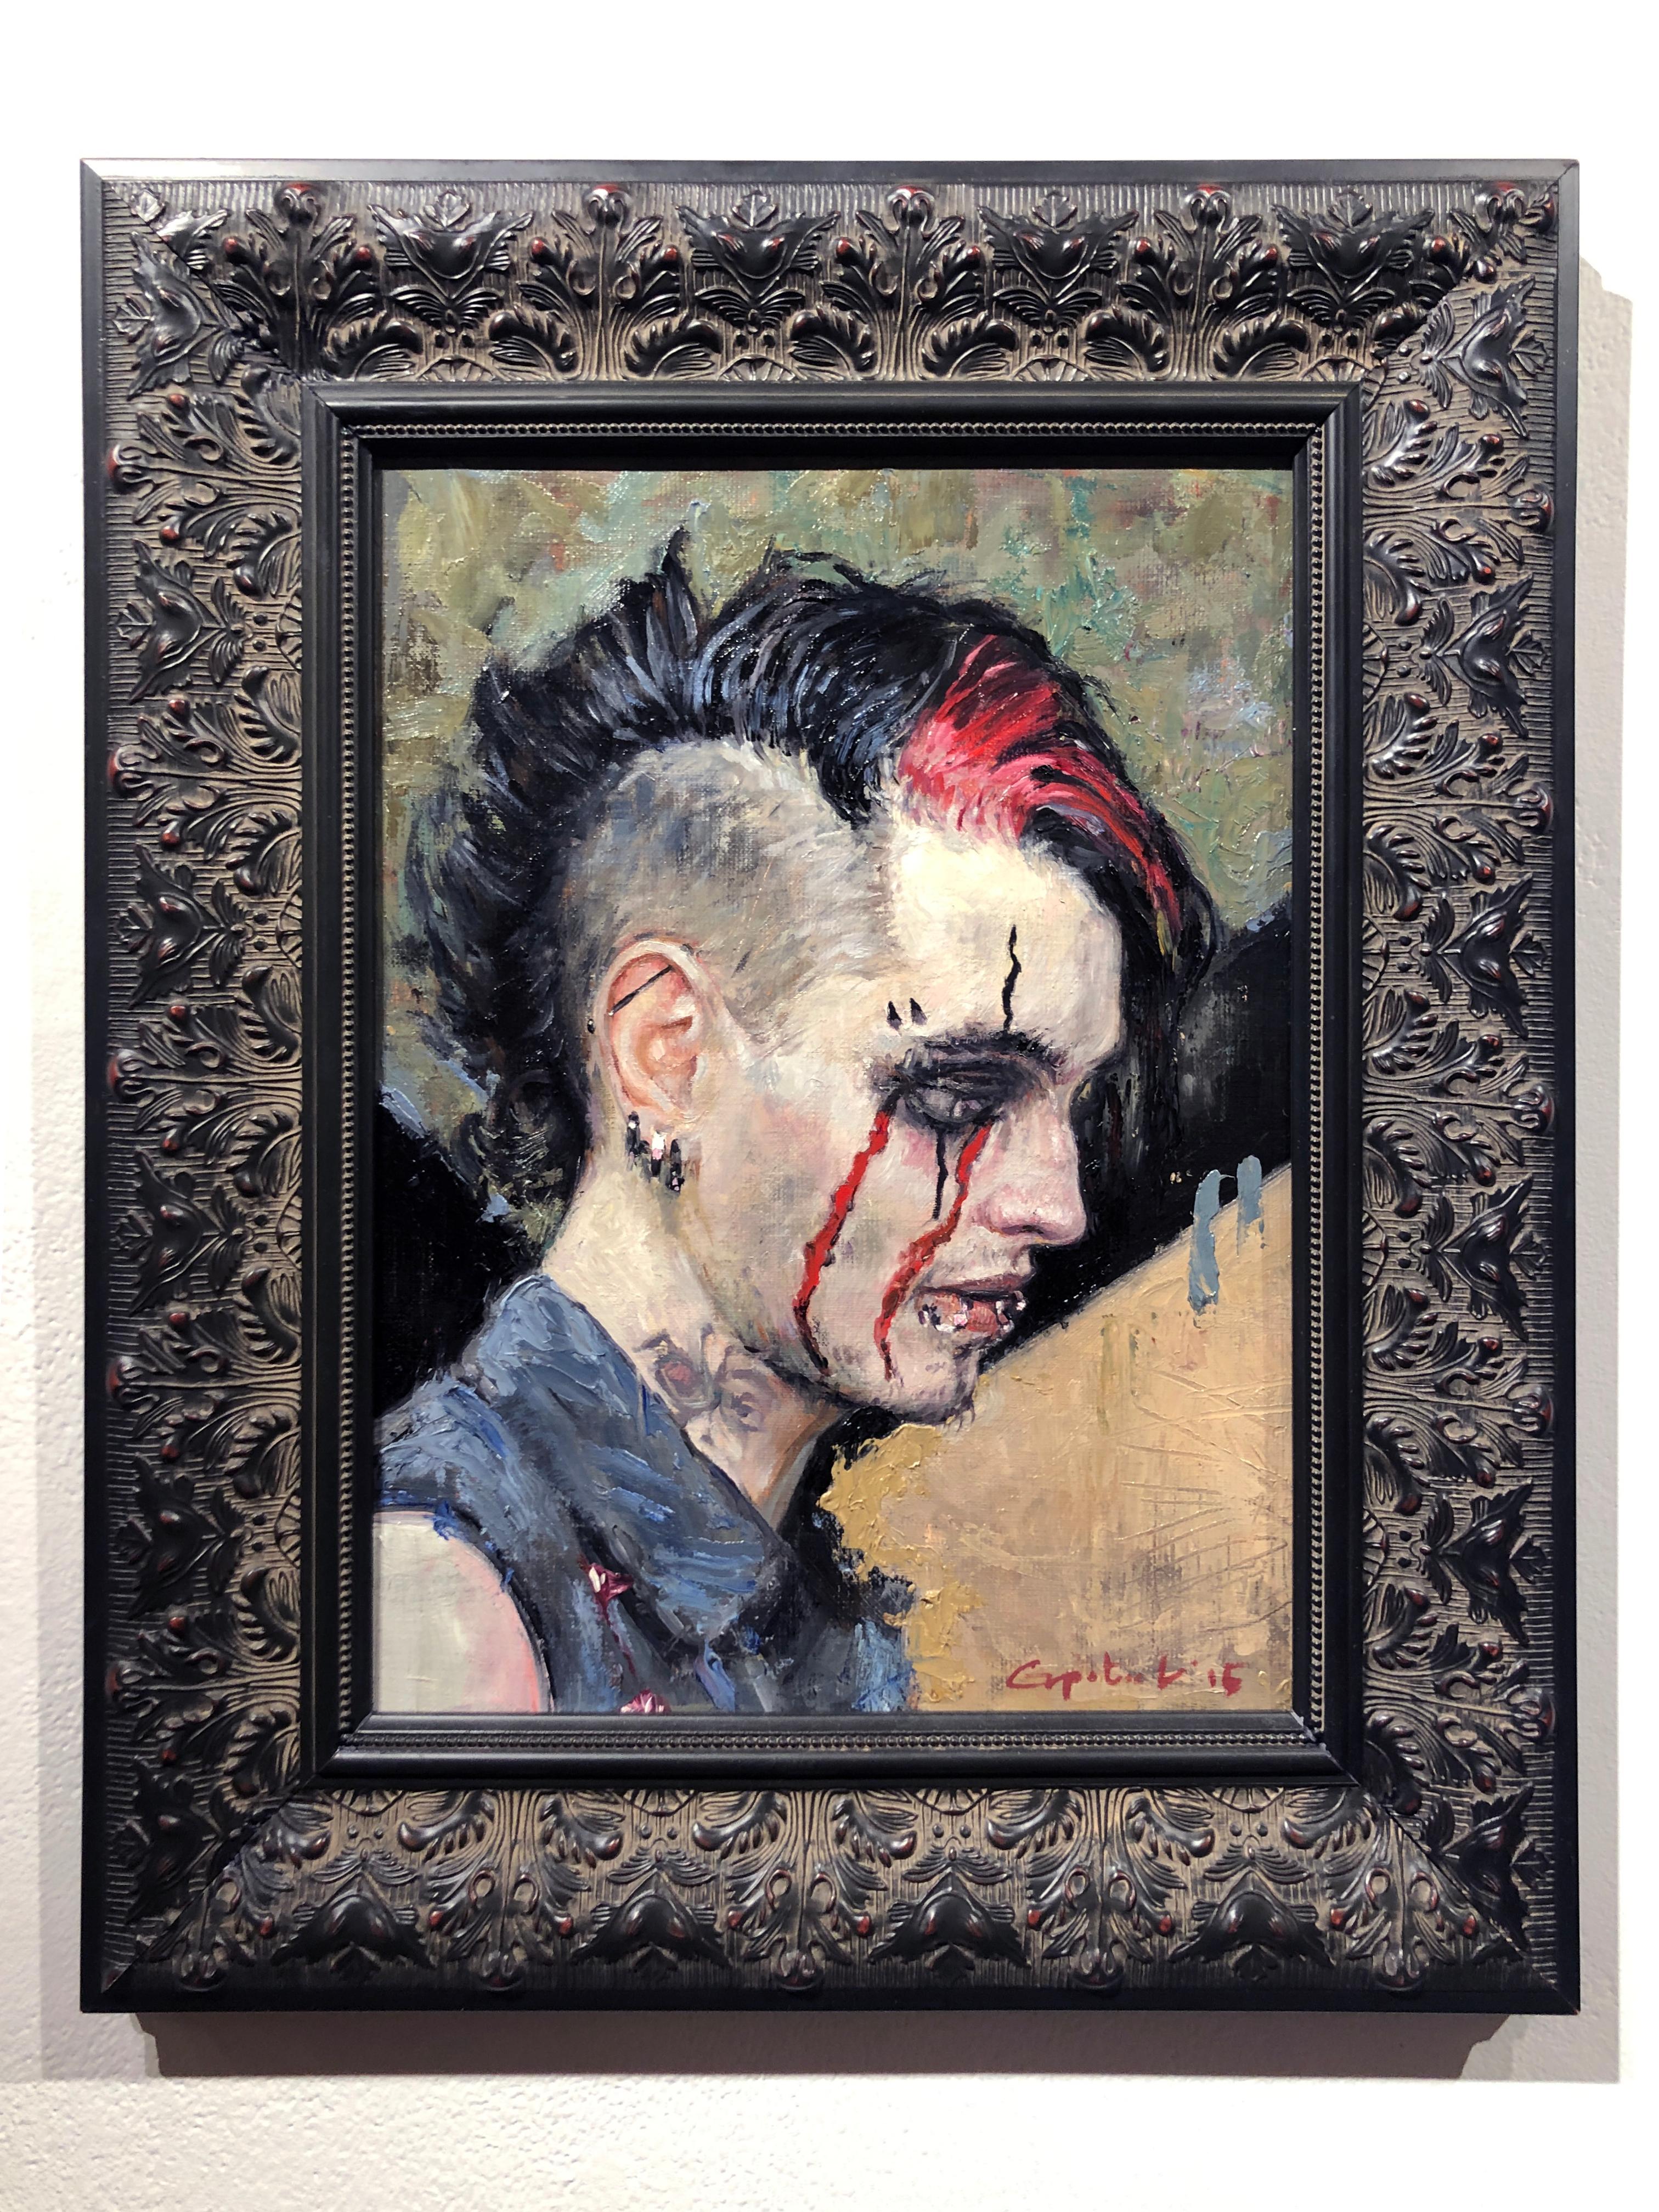 Wave Gotik Treffen I - Original Ölgemälde Goth Punk Porträt mit Piercing – Painting von Gail Potocki